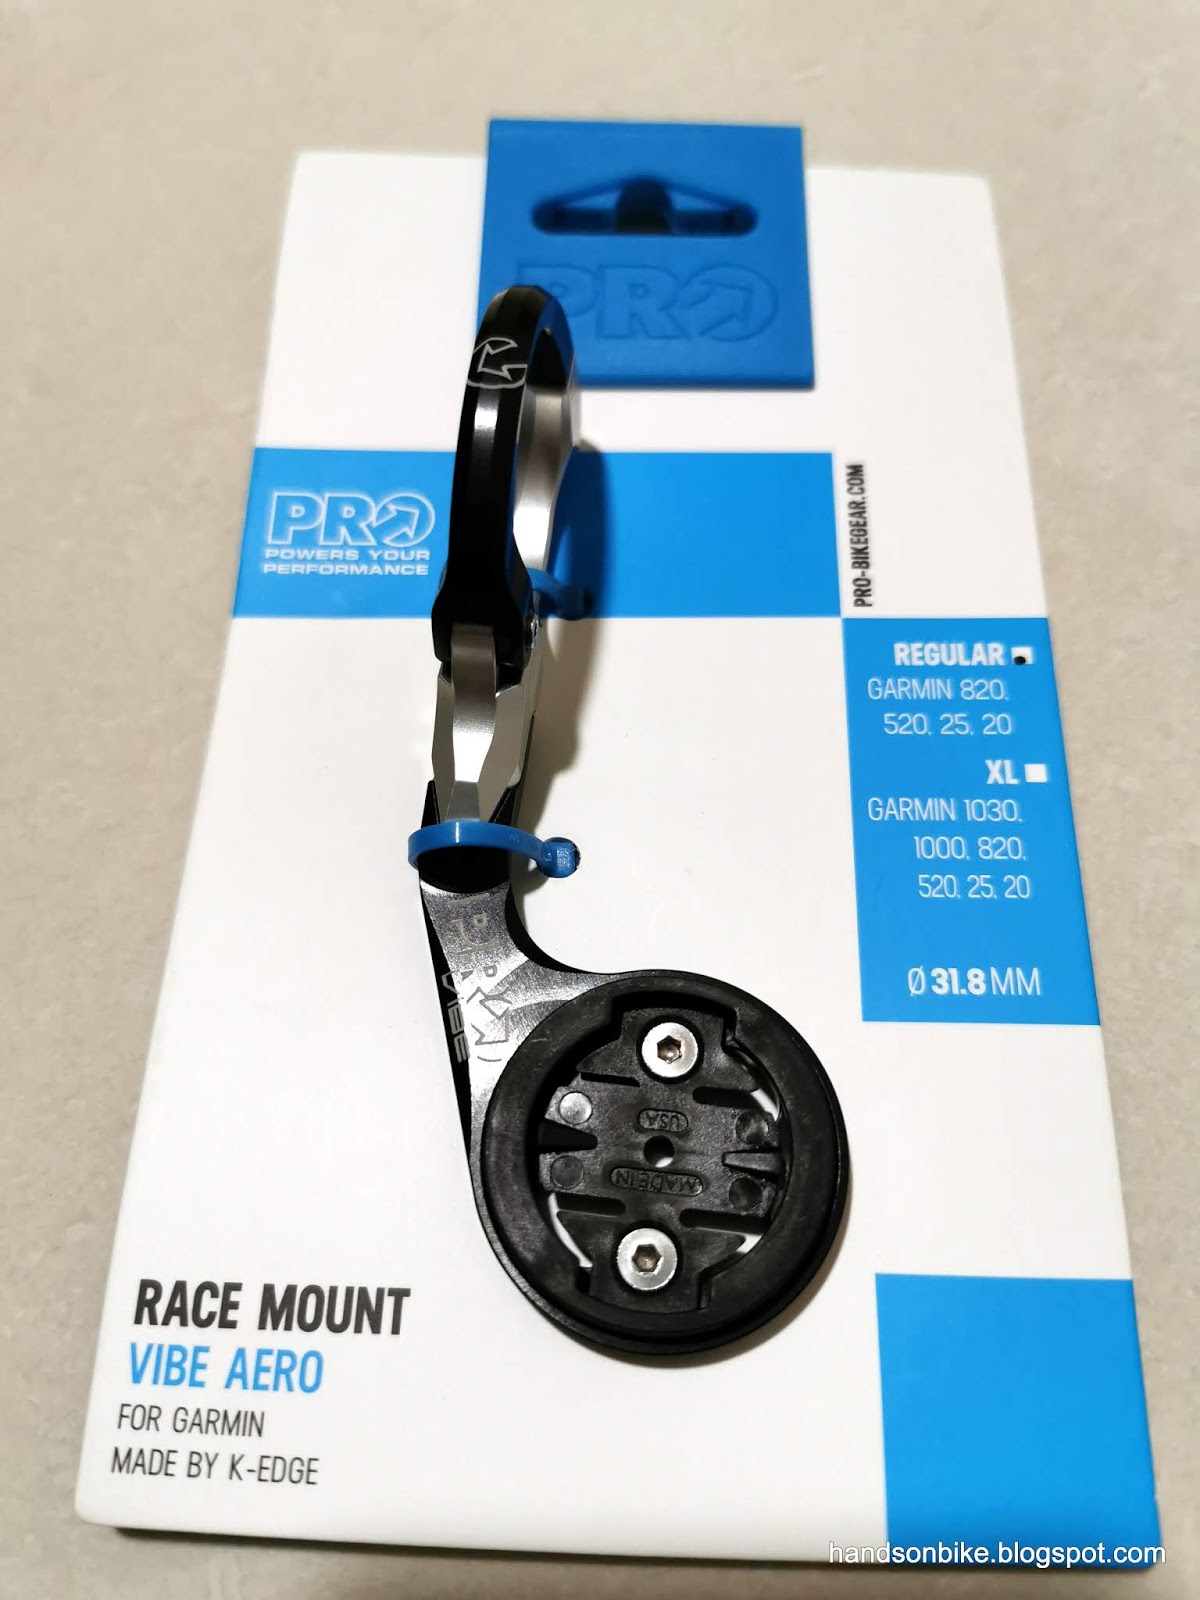 Shimano Pro K-EDGE Race Mount For Pro Vibe Aero Regular Garmin 1030 1000 820 520